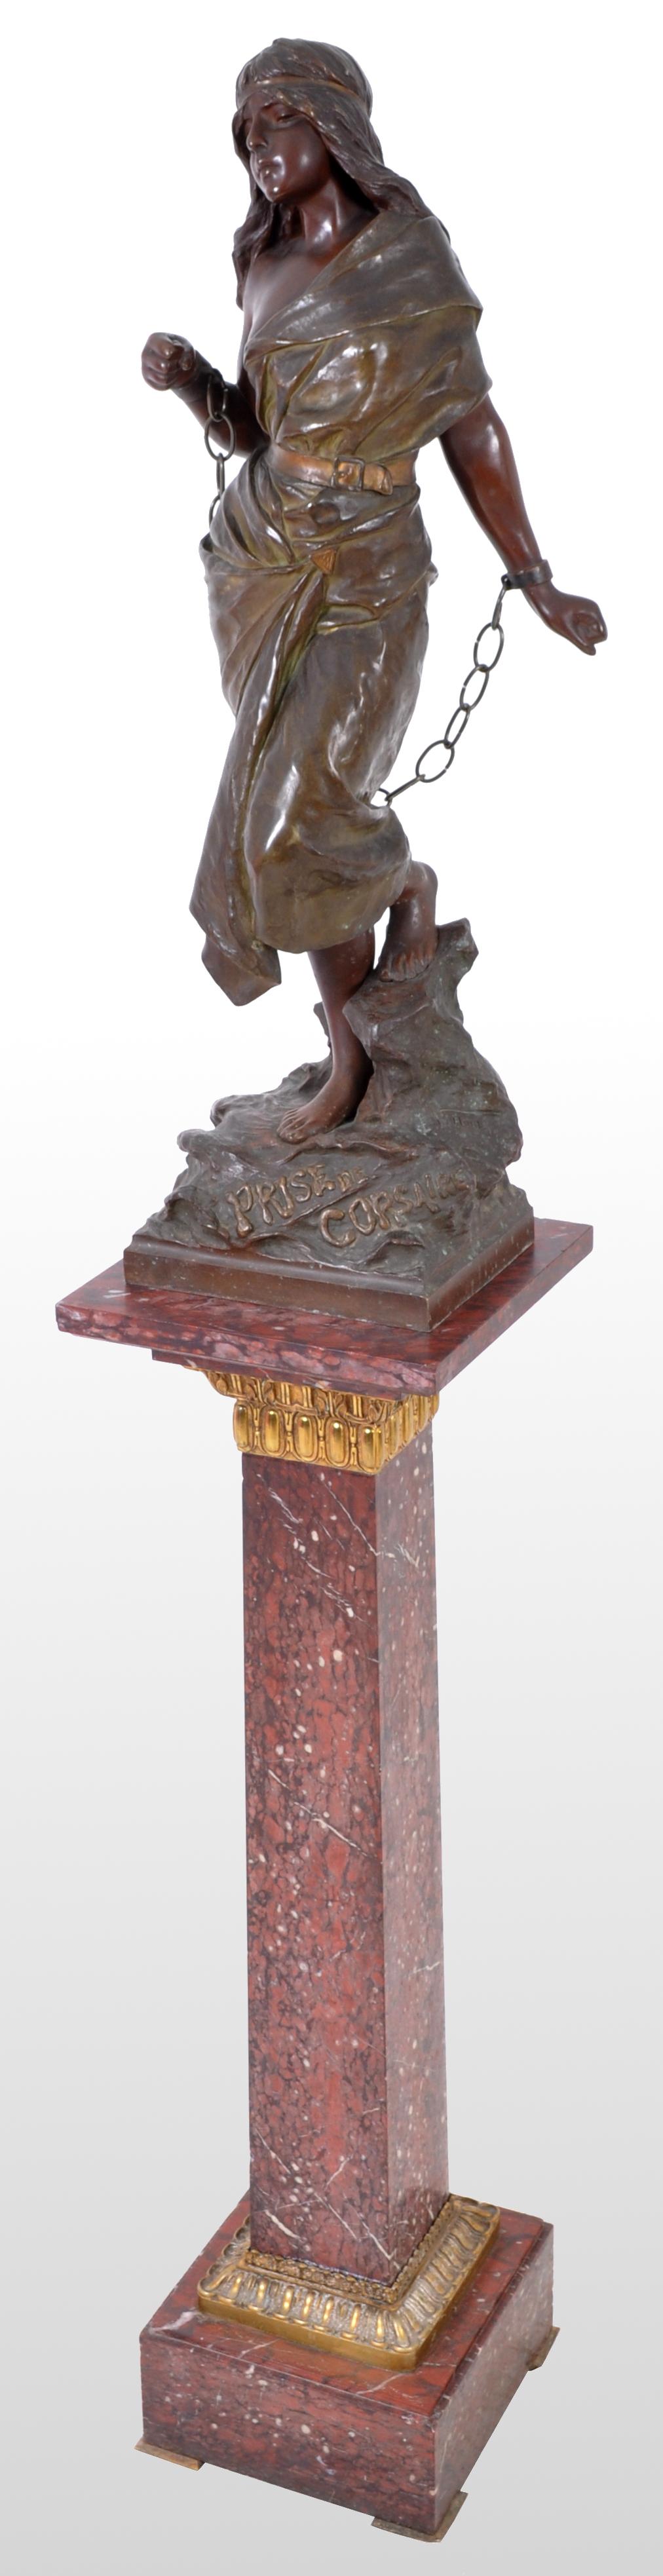 Antique French Art Nouveau bronze figure, 